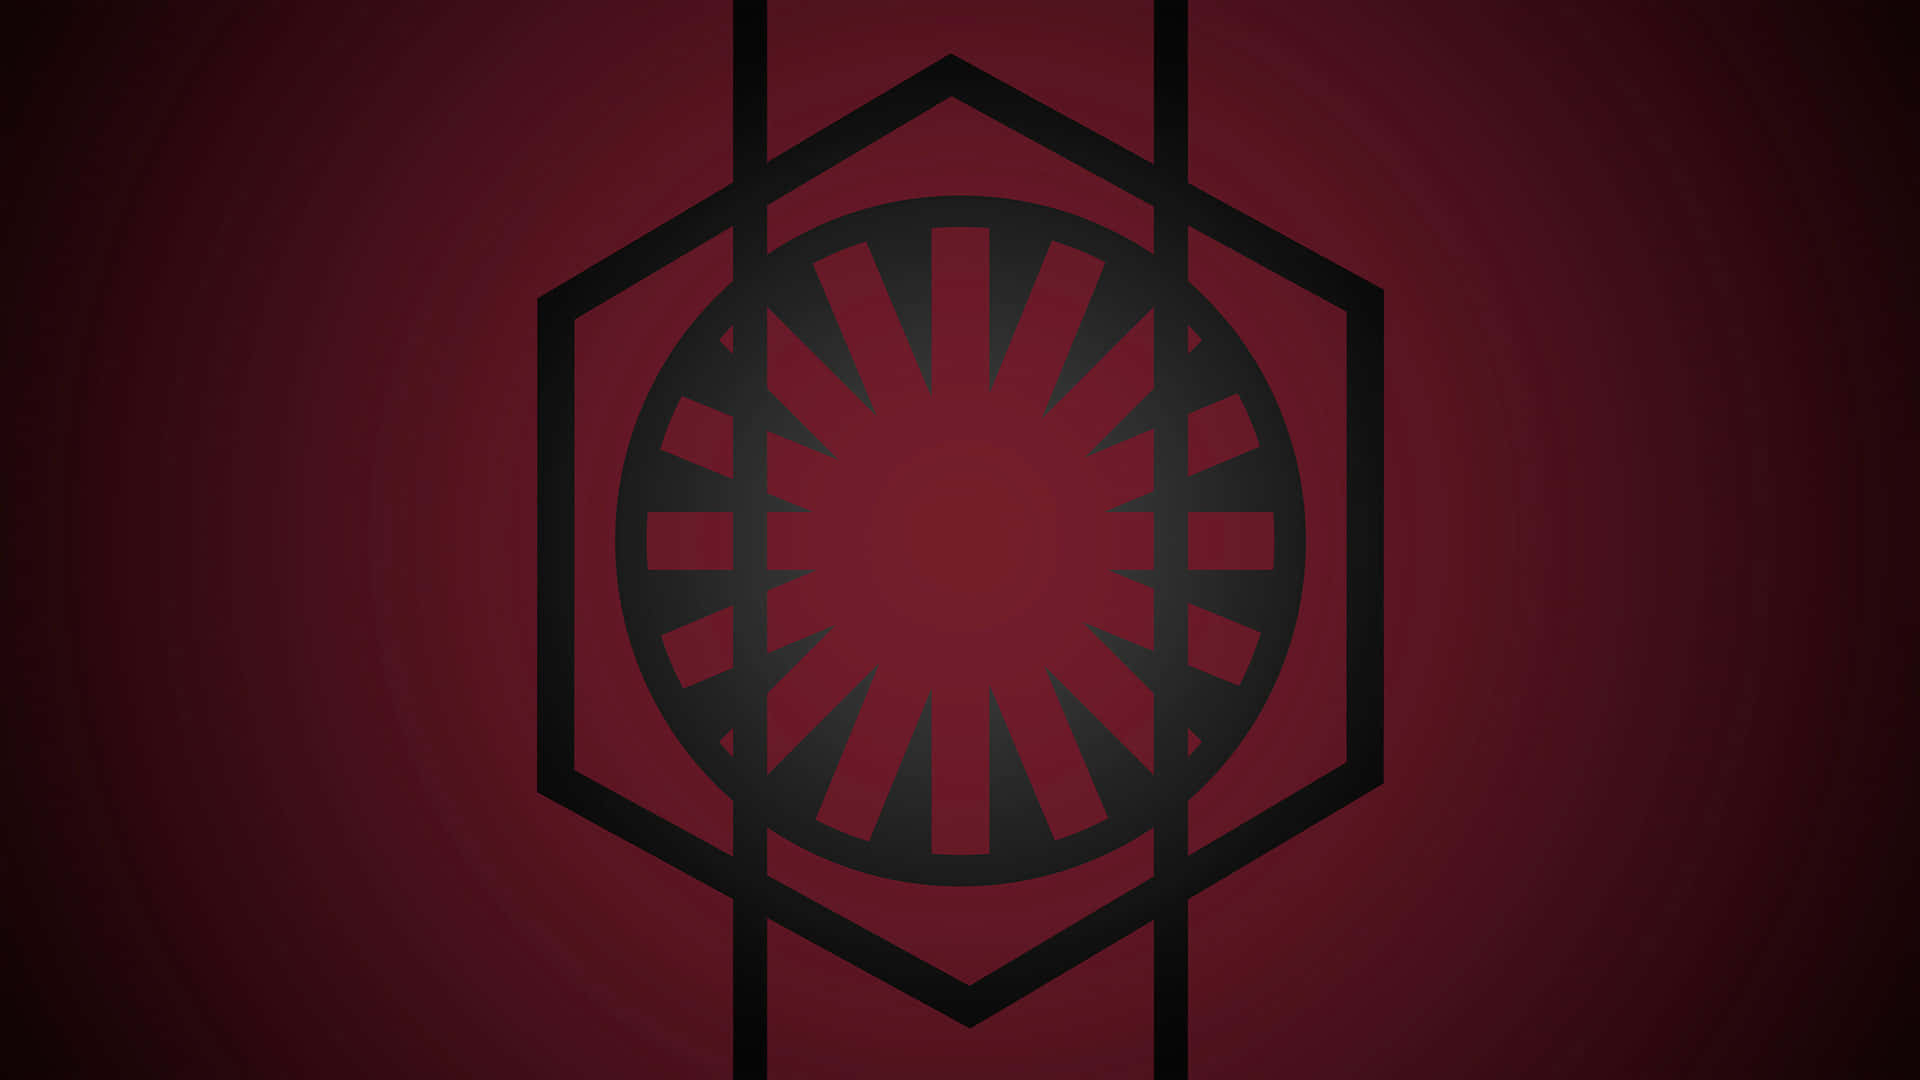 Lastropas De La Primera Orden Se Reunieron Para La Batalla En El Universo De Star Wars. Fondo de pantalla